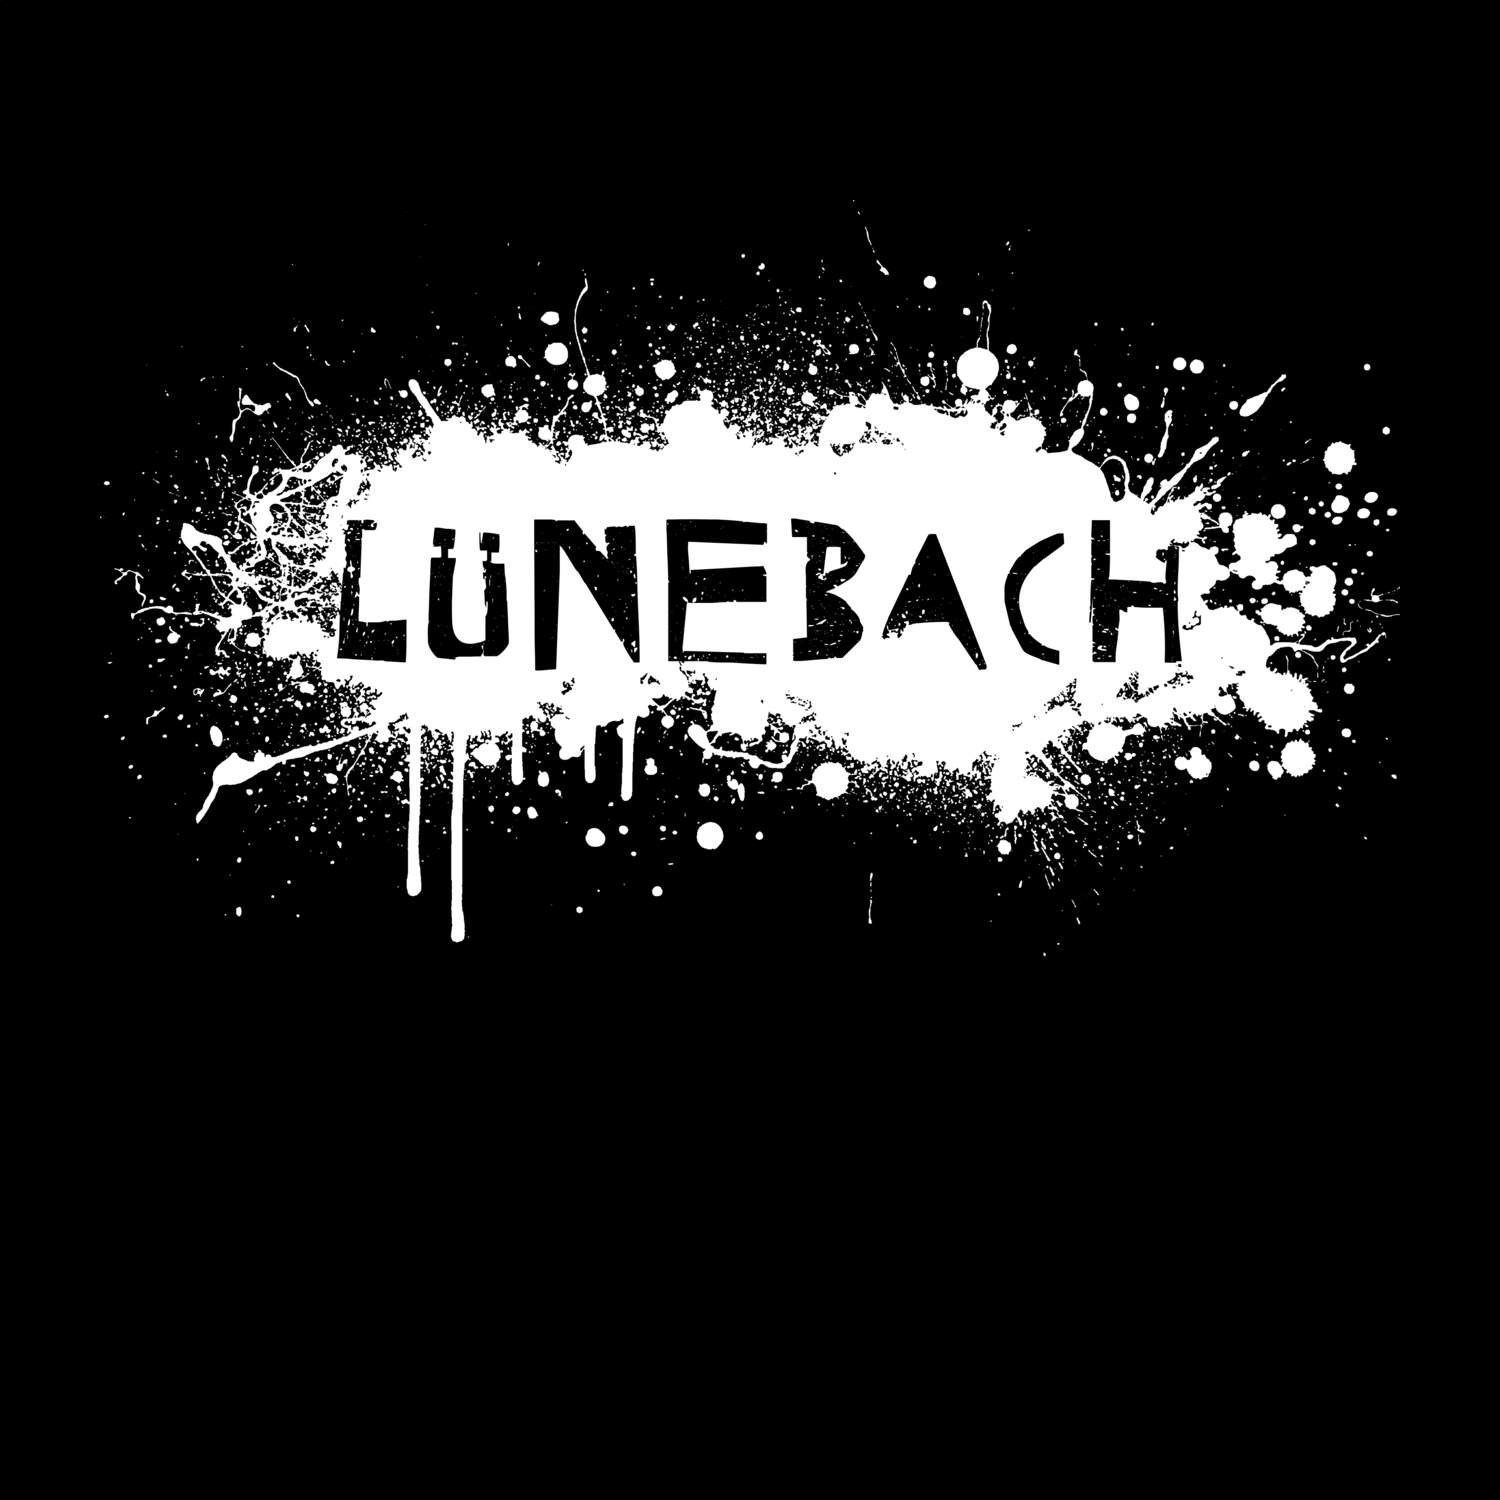 Lünebach T-Shirt »Paint Splash Punk«